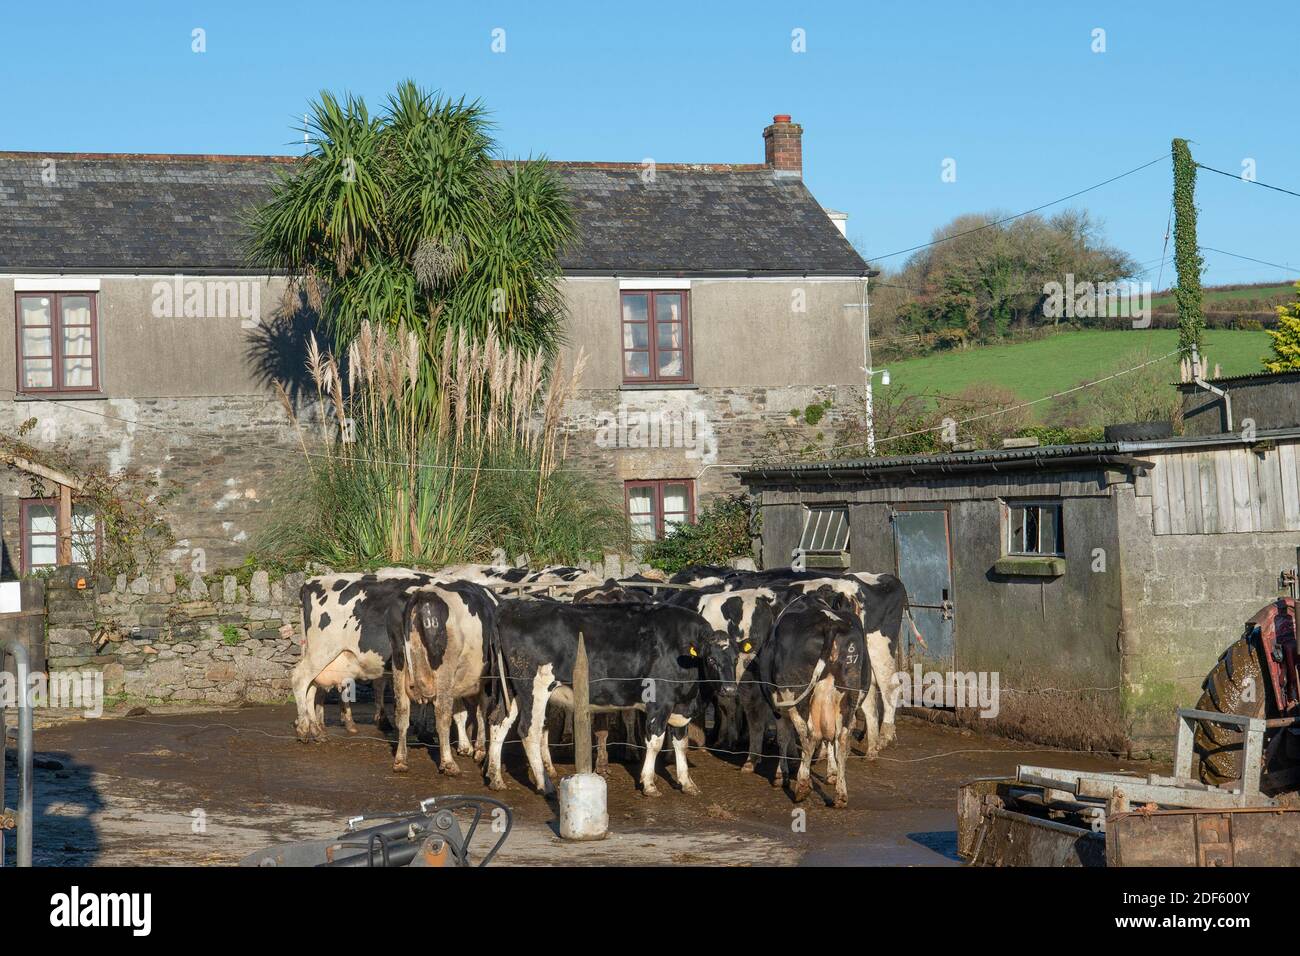 bovins laitiers dans une ferme où l'on mange de l'ensilage Banque D'Images